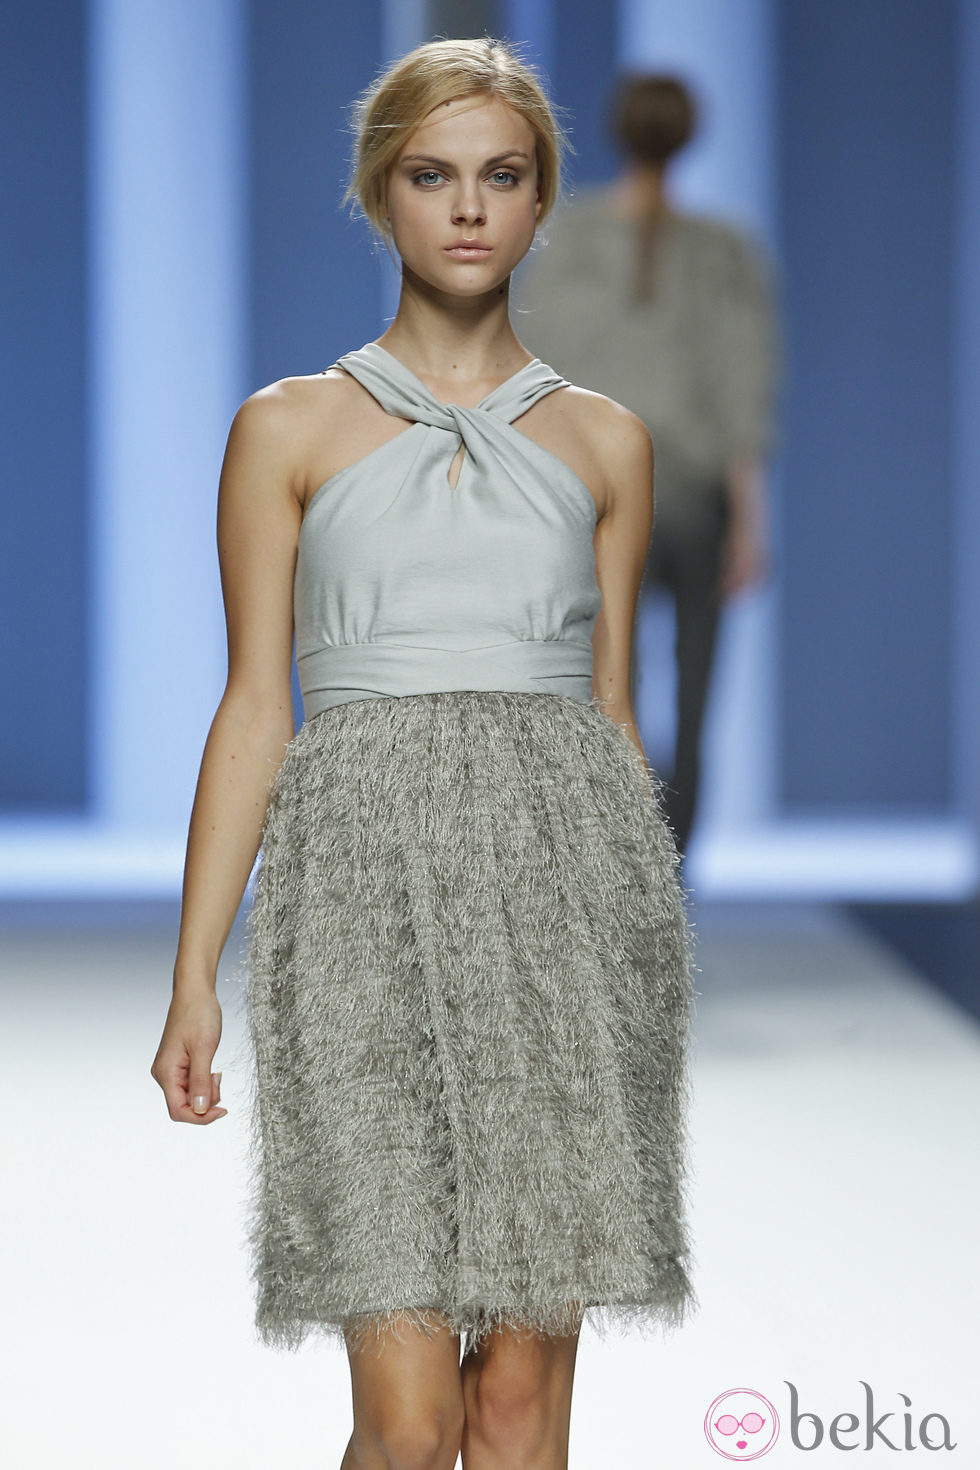 Vestido gris de la colección primavera 2012 de Sita Murt en Cibeles